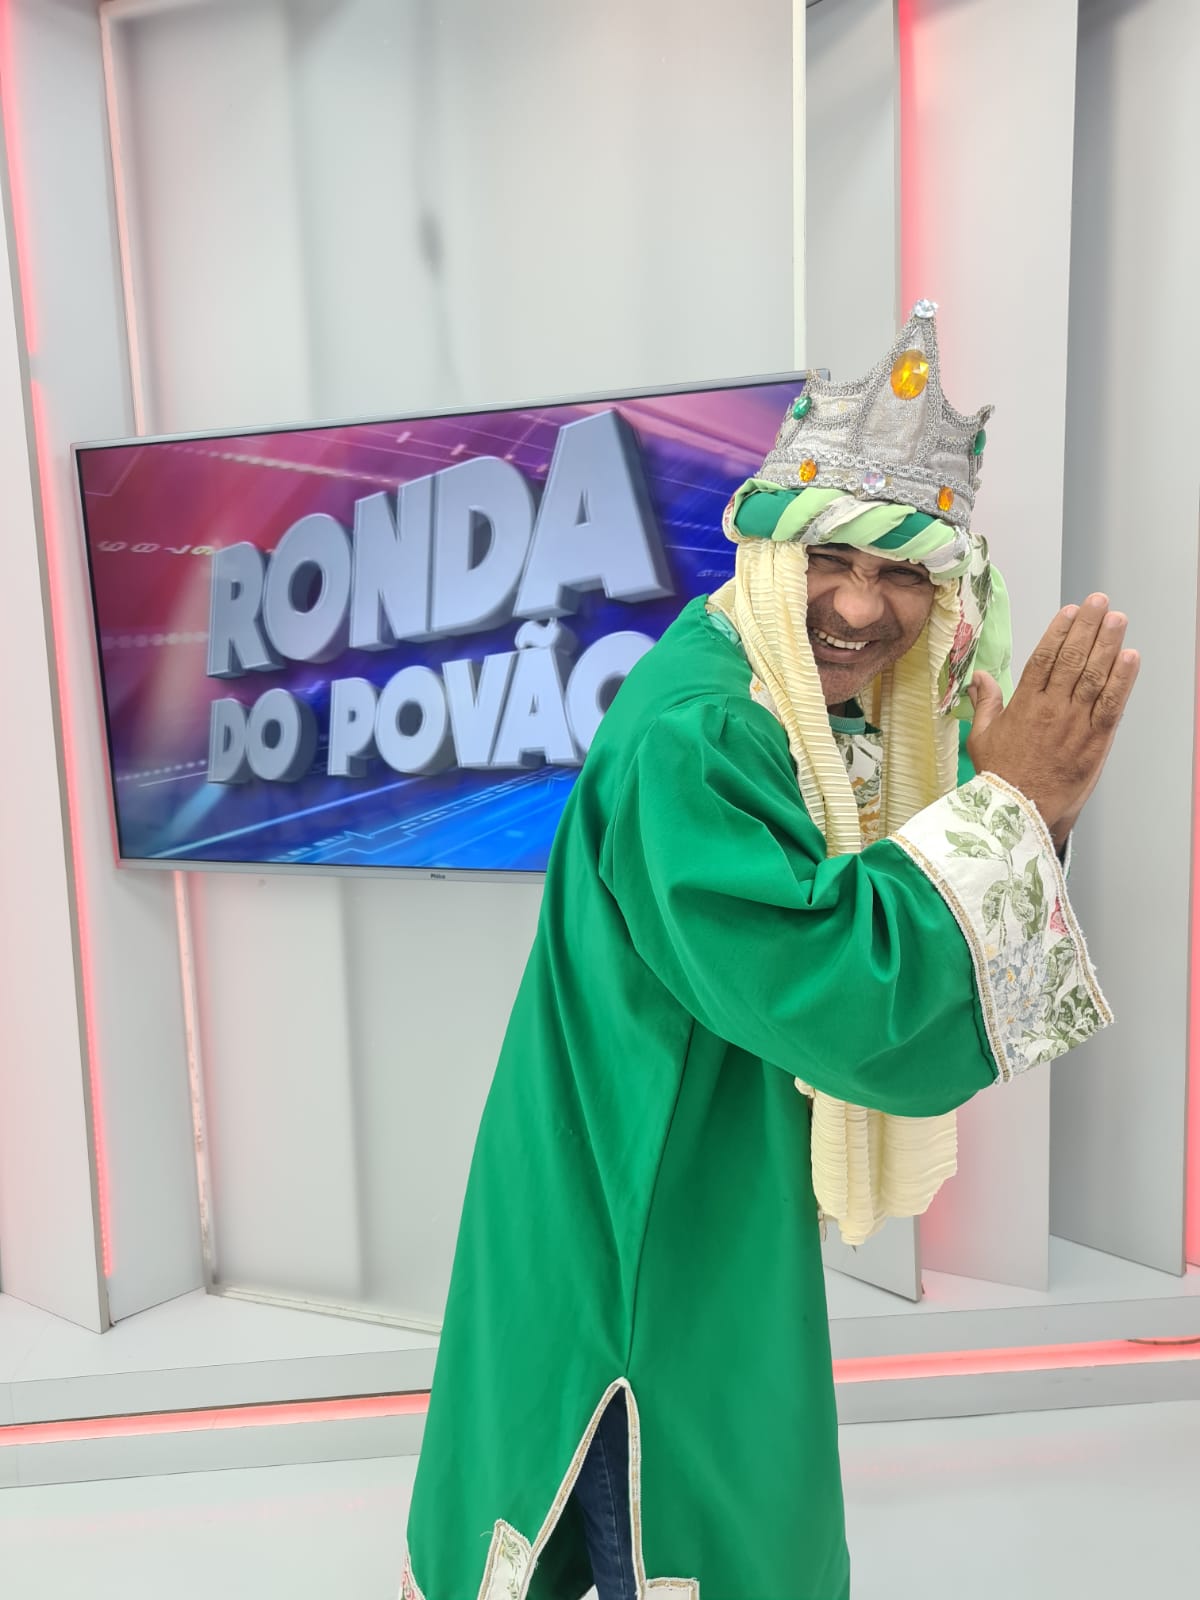 Dia de Santos Reis é celebrado no Ronda do Povão. Veja! - Imagem 2